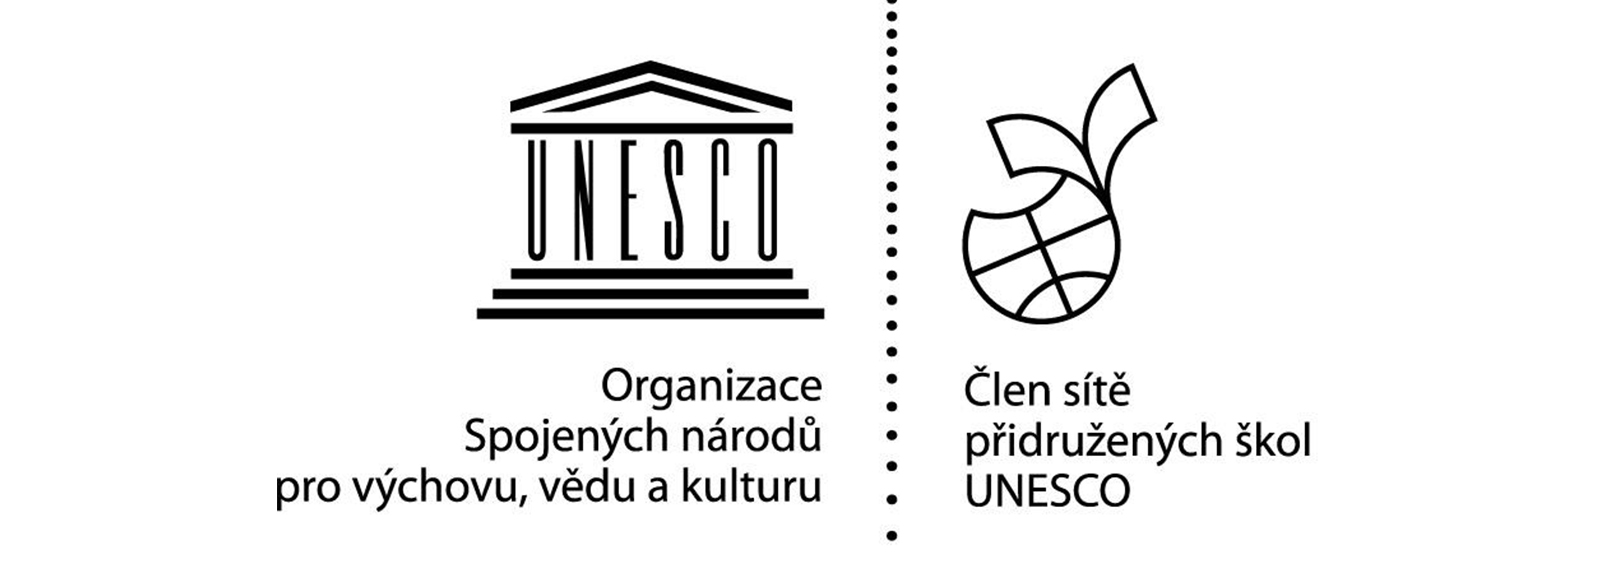 Přidružená škola UNESCO